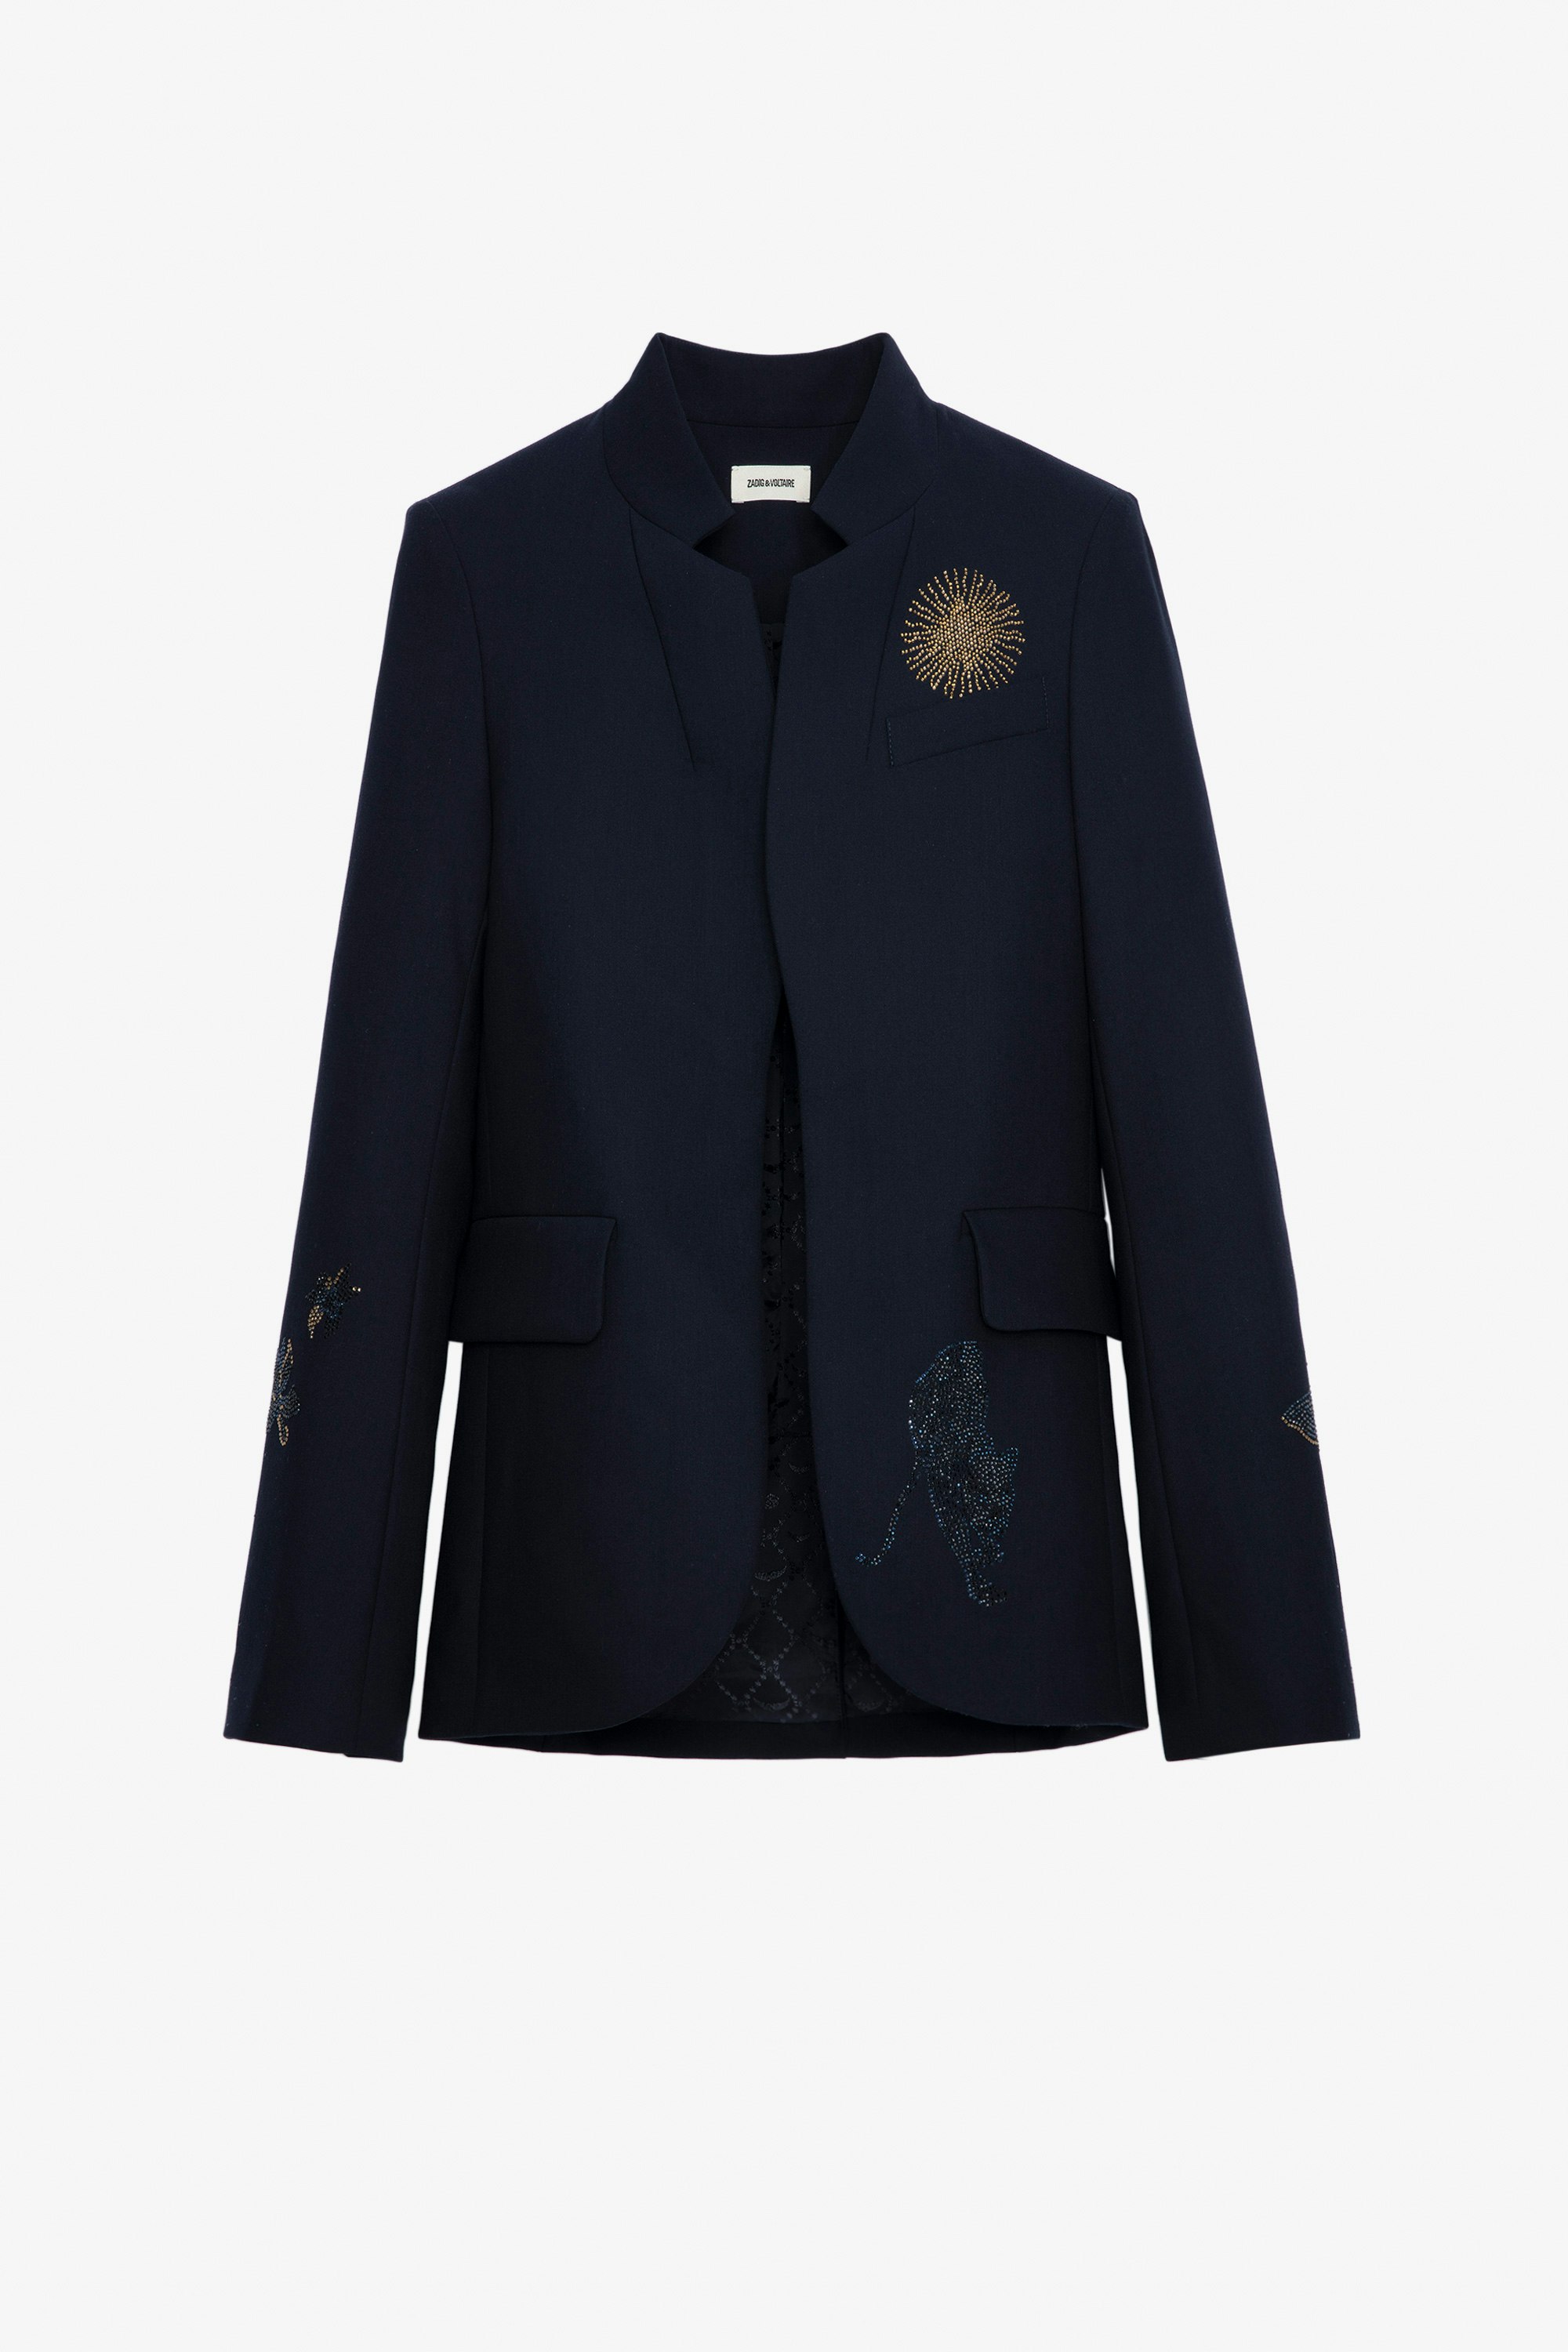 Very Multi Strass Blazer - Women's navy blazer featuring strass details.